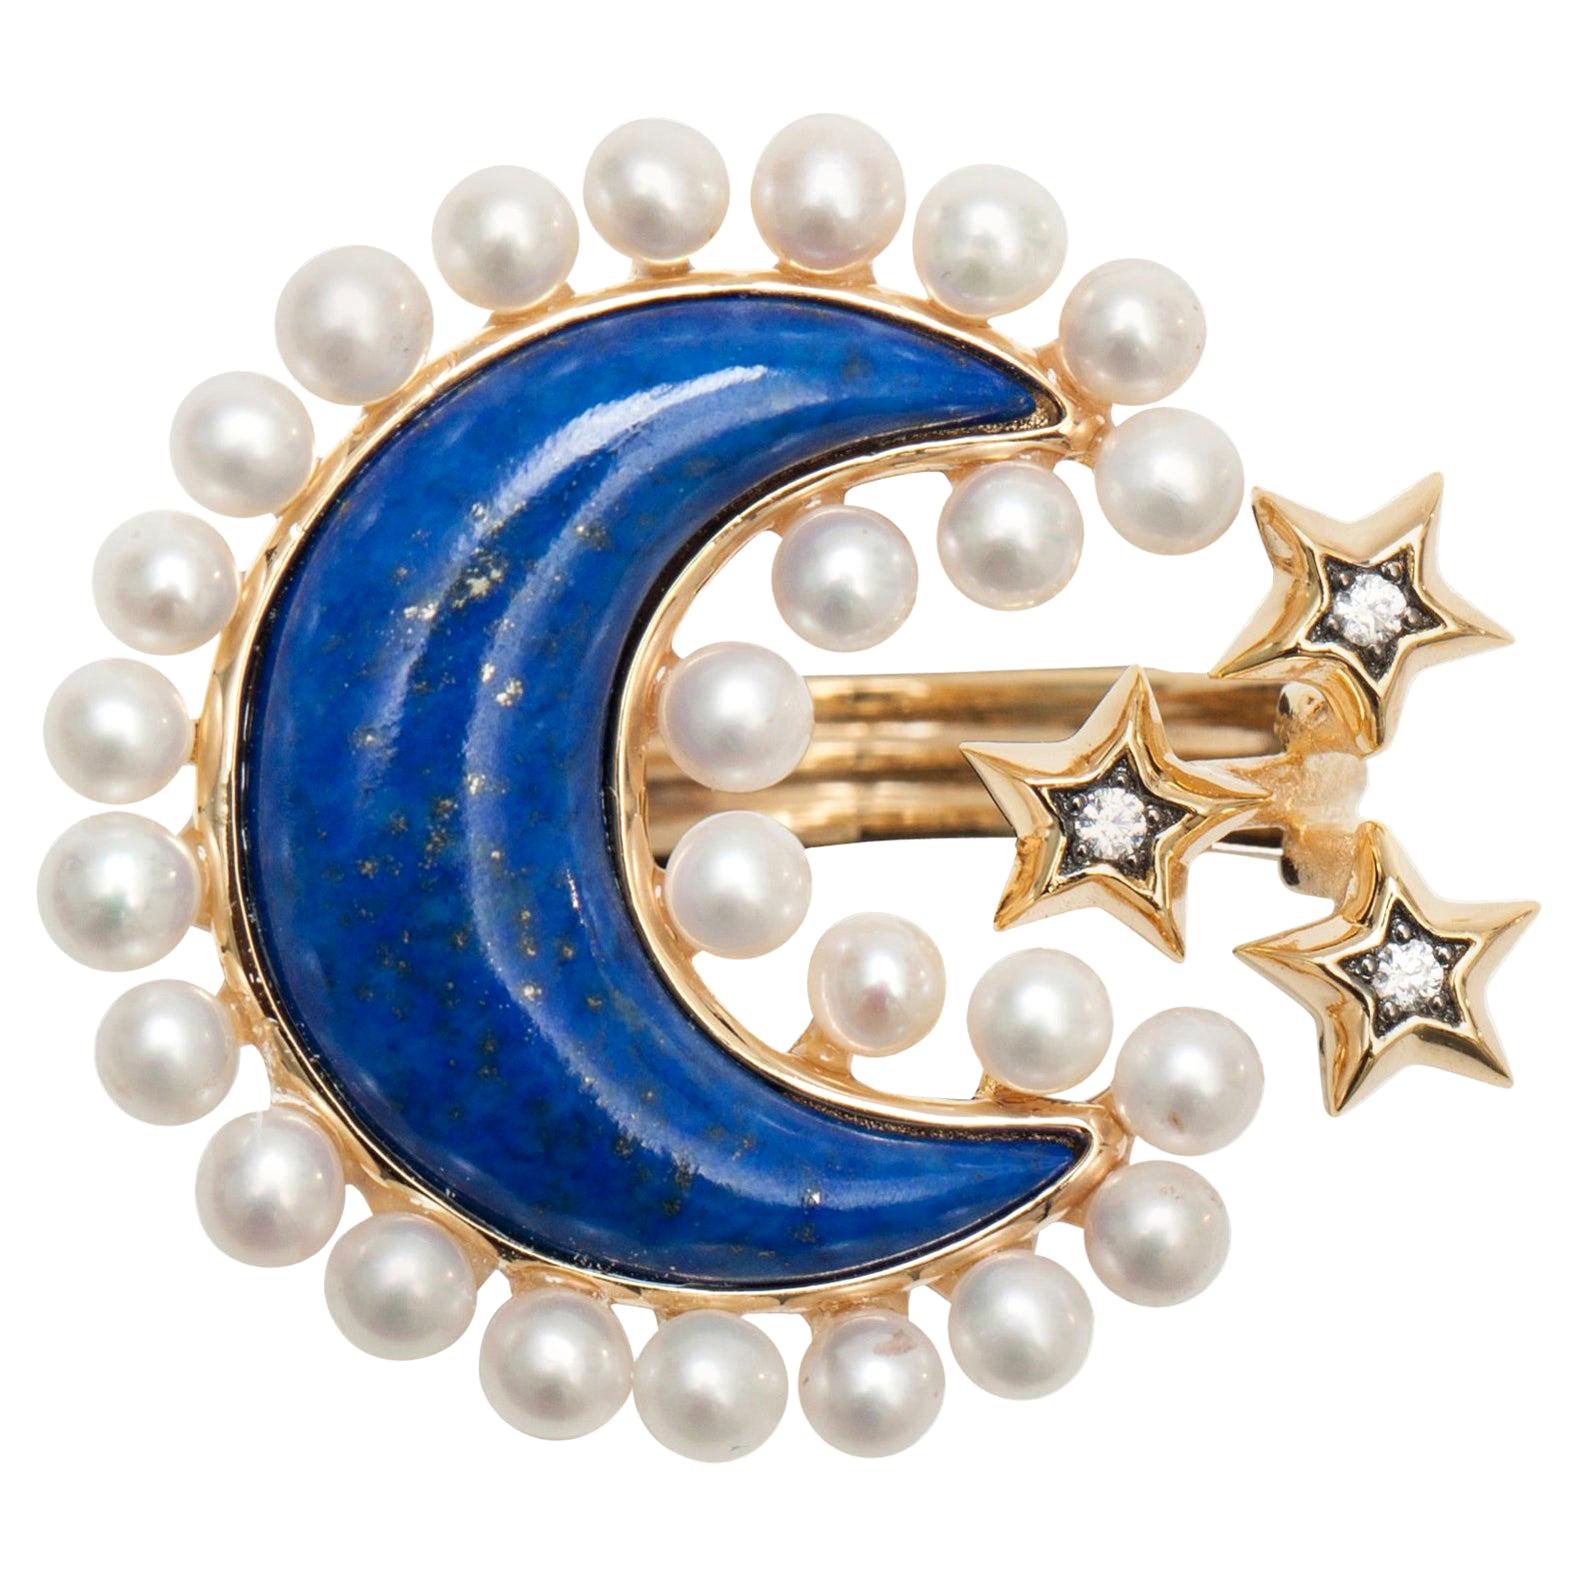 Bague cocktail Ammanii en or vermeil, perles et lapis-lazuli, lune et étoiles